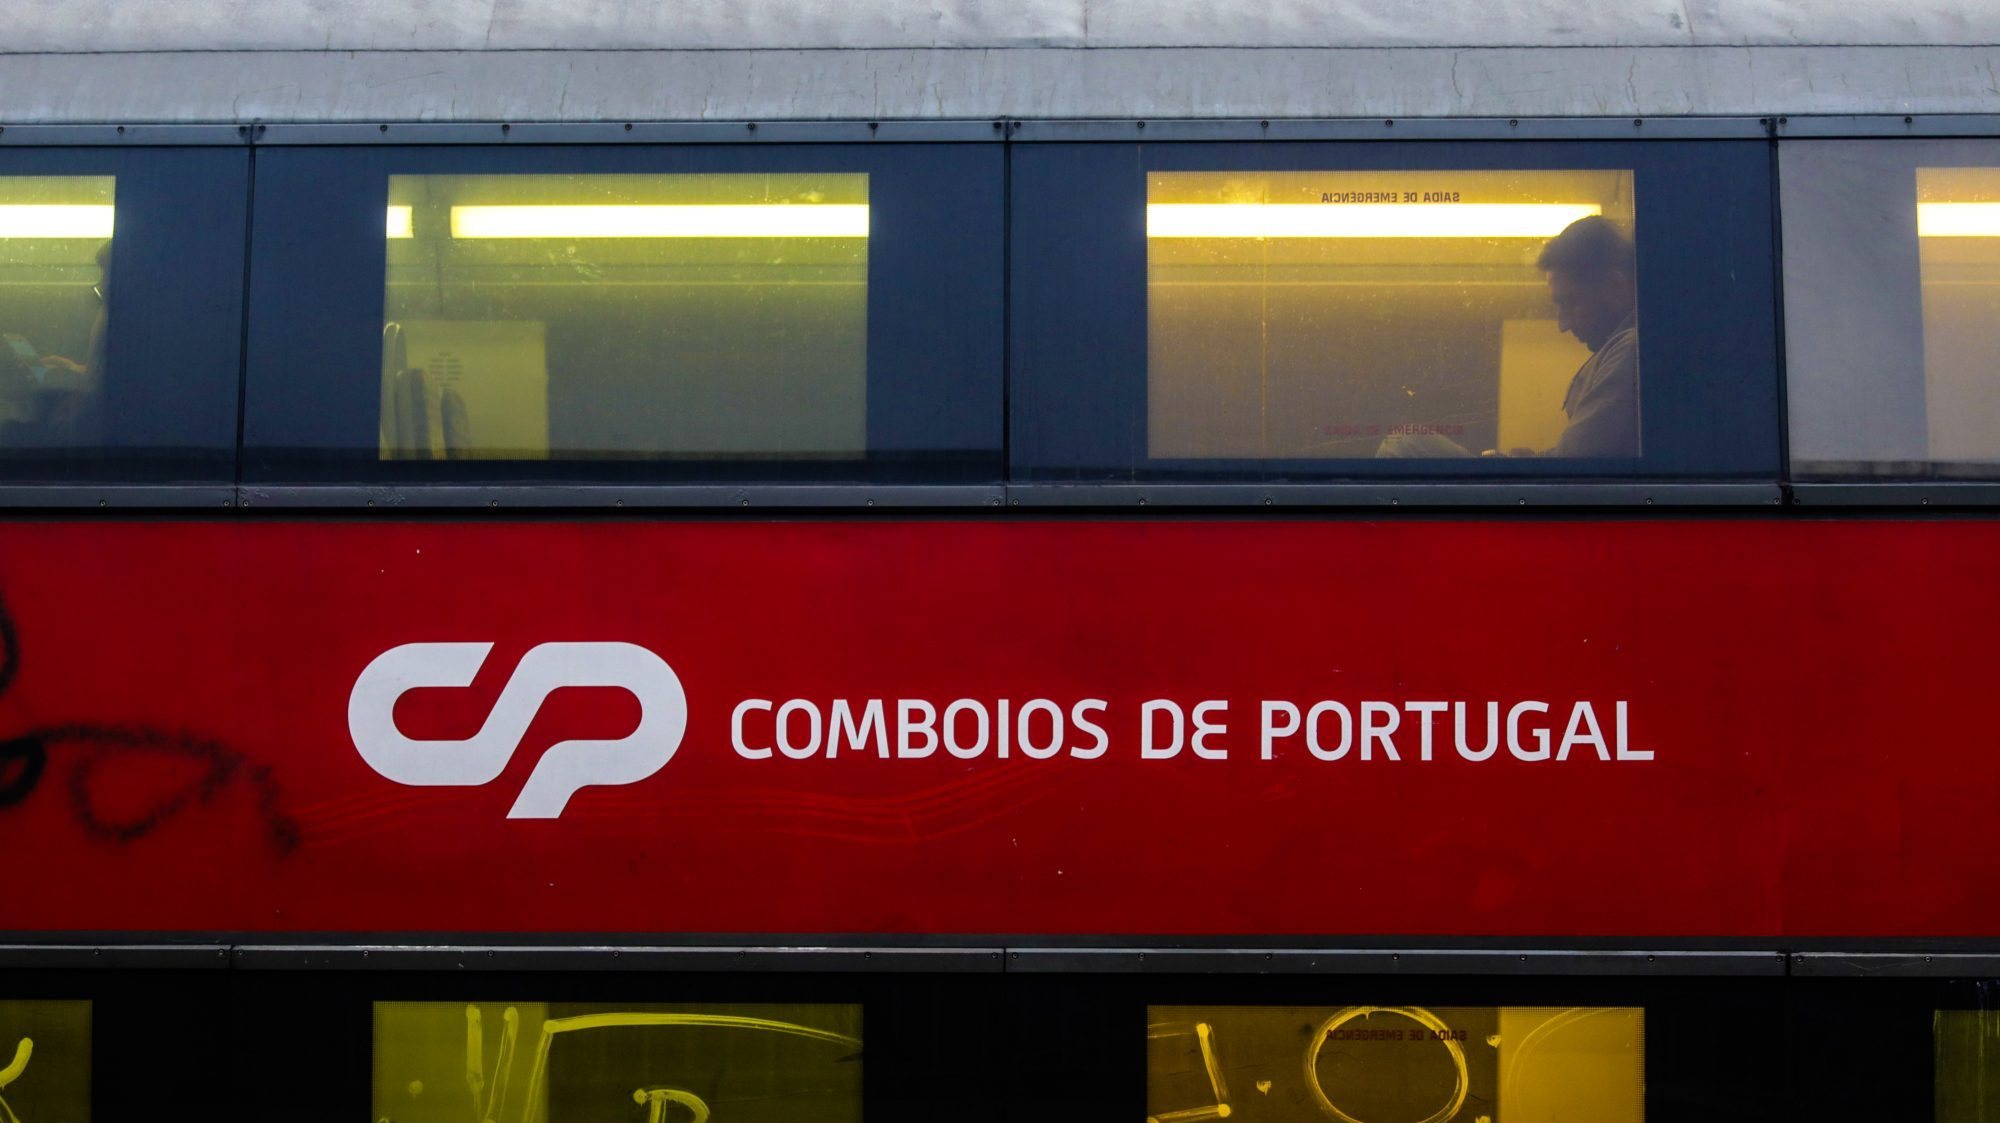 Dia 25, a empresa também suprimiu a ligação entre Porto e Vigo